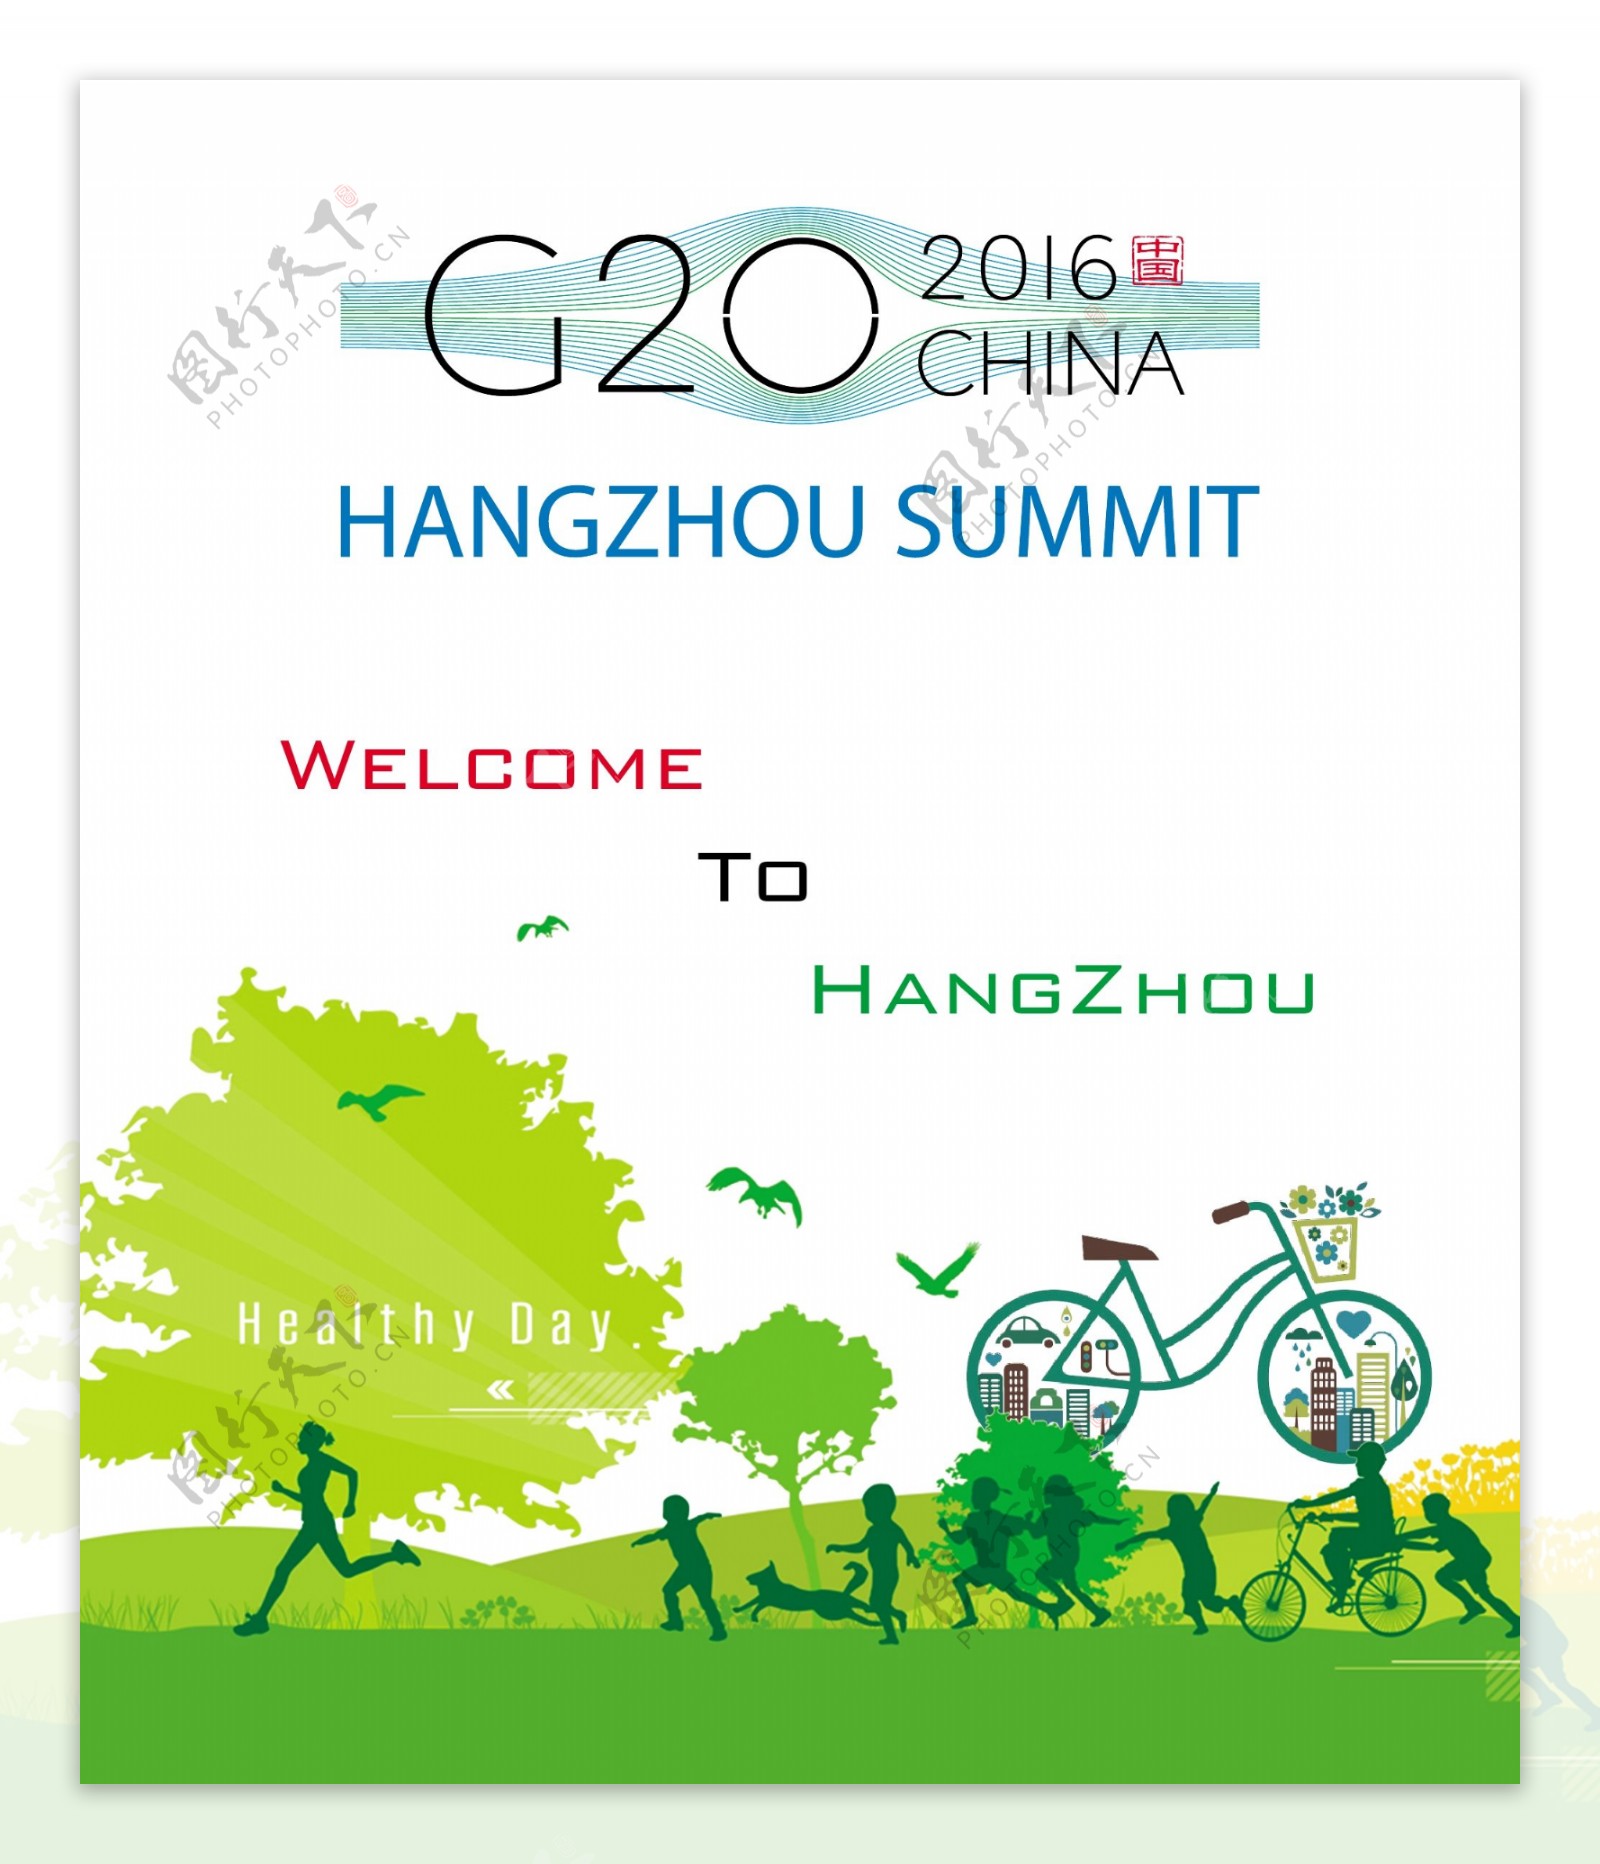 2016年G20峰会宣传海报图片